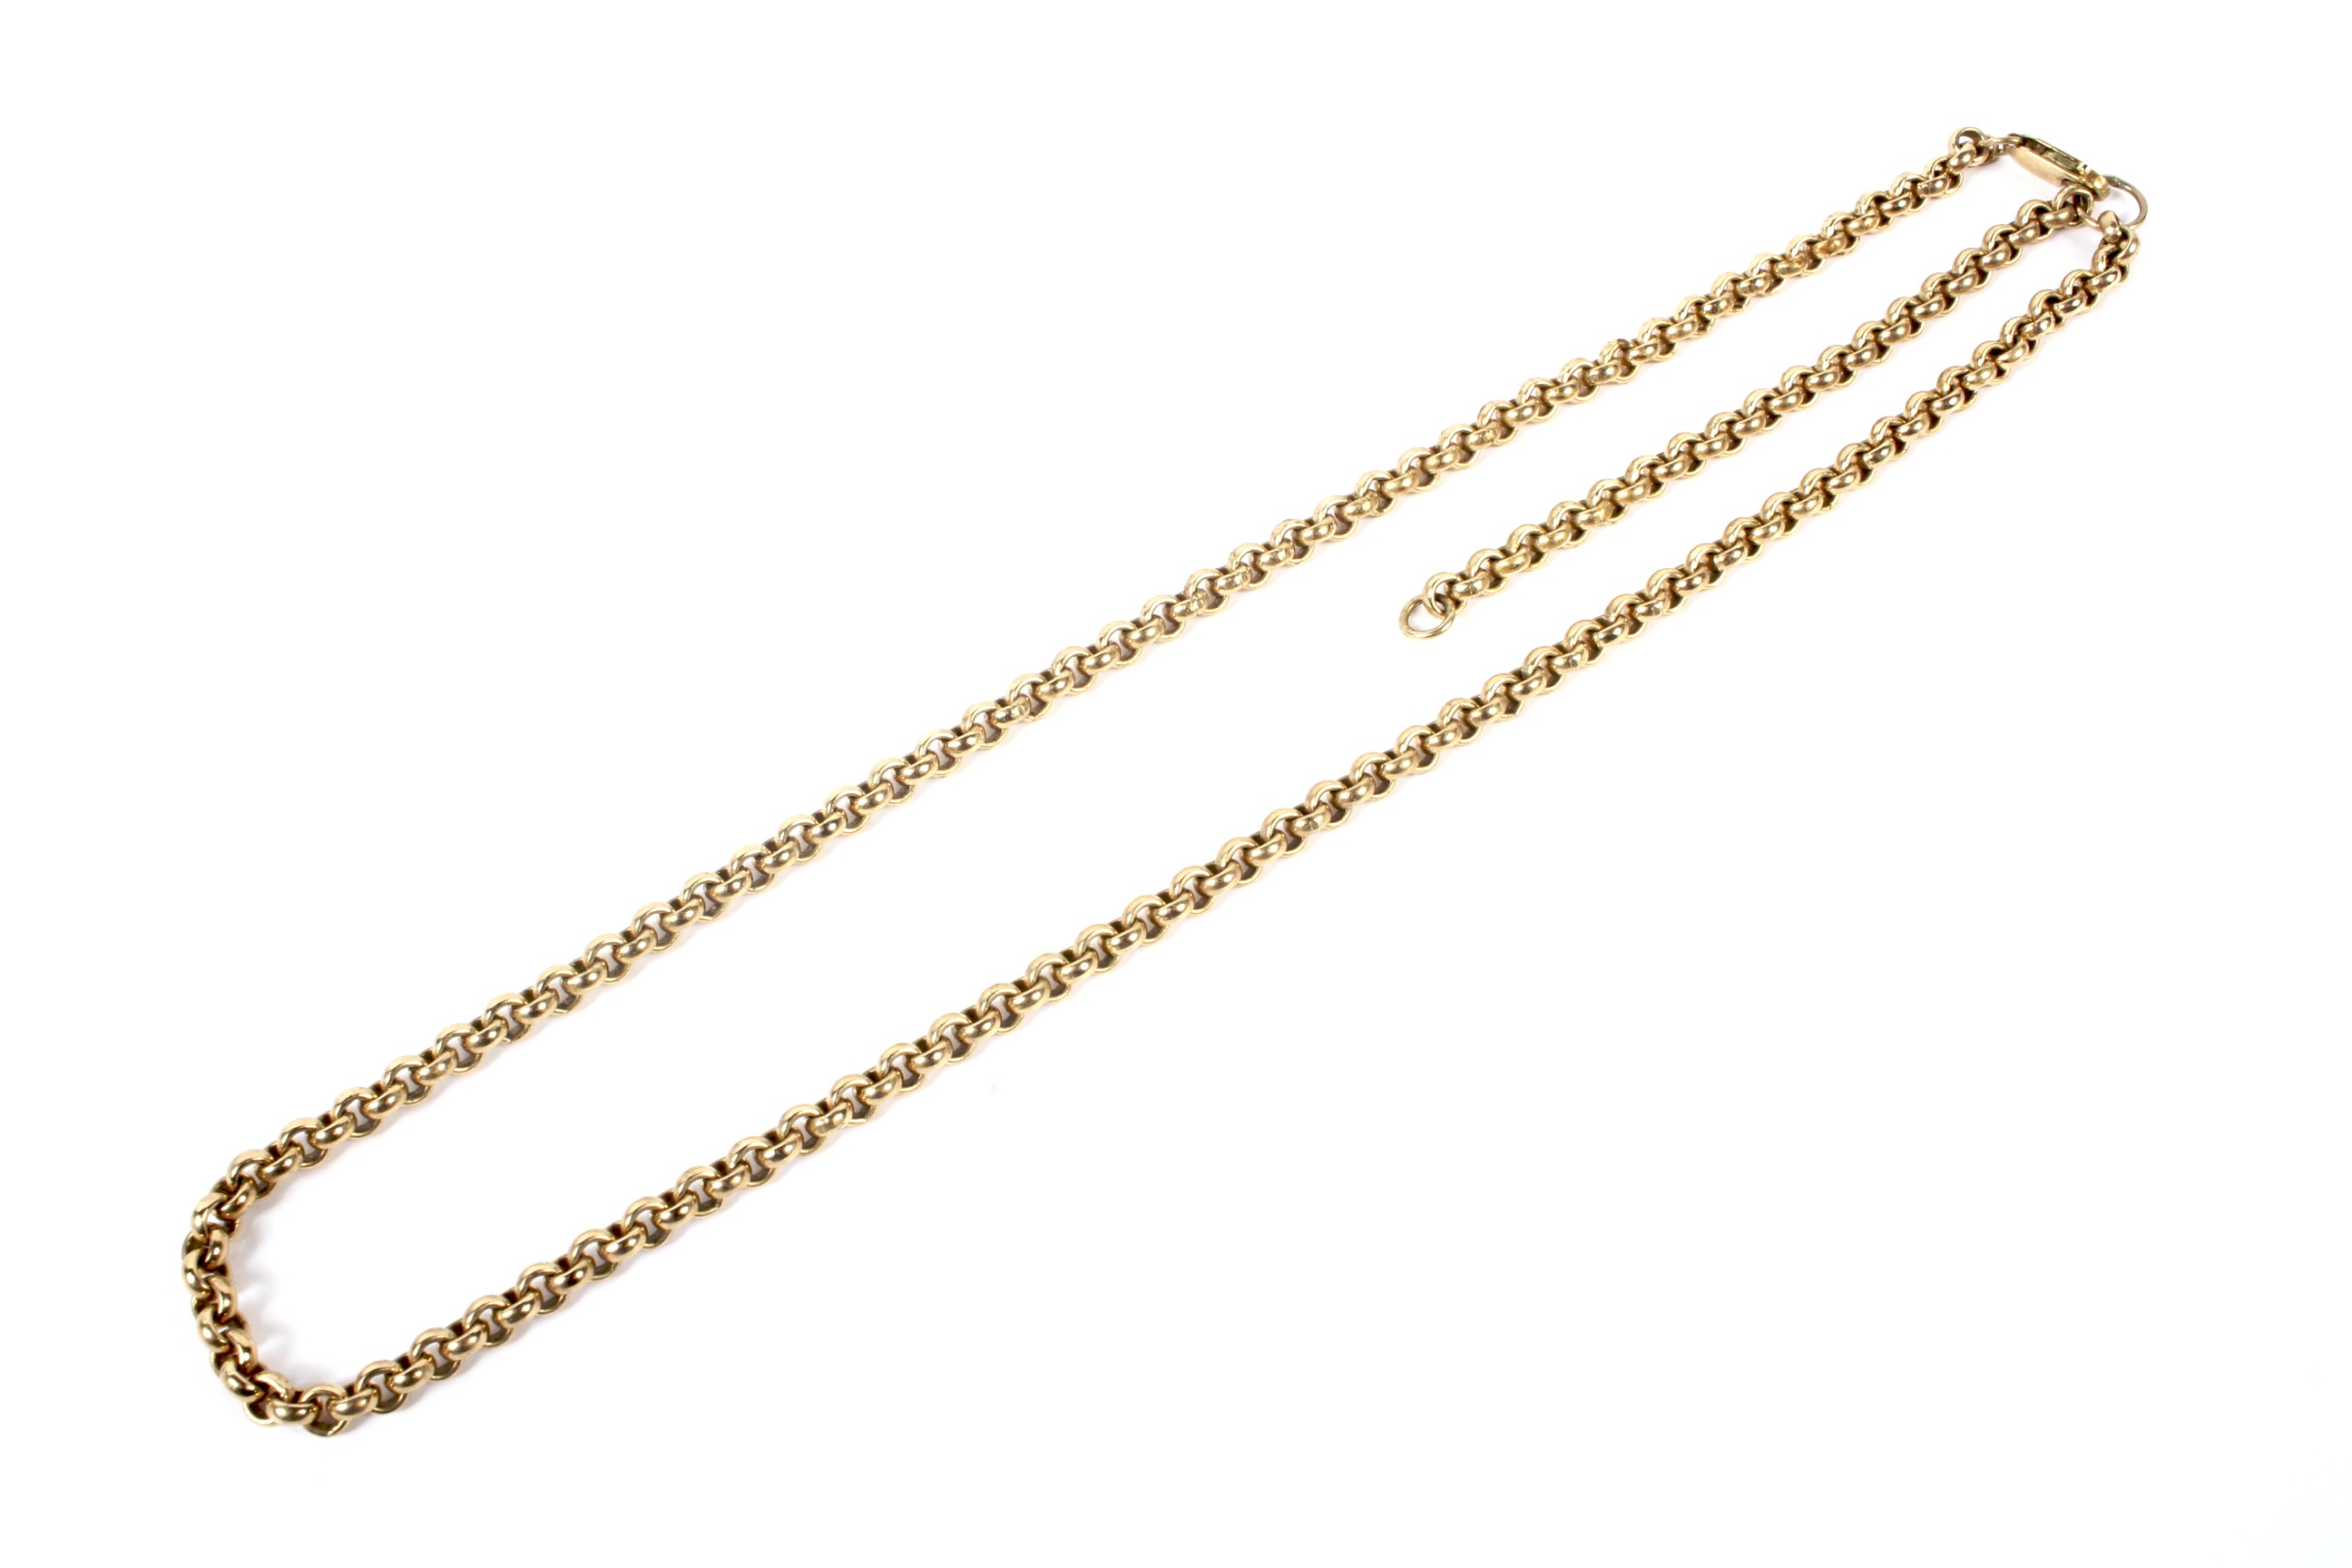 A vintage 9ct gold belcher link necklace.